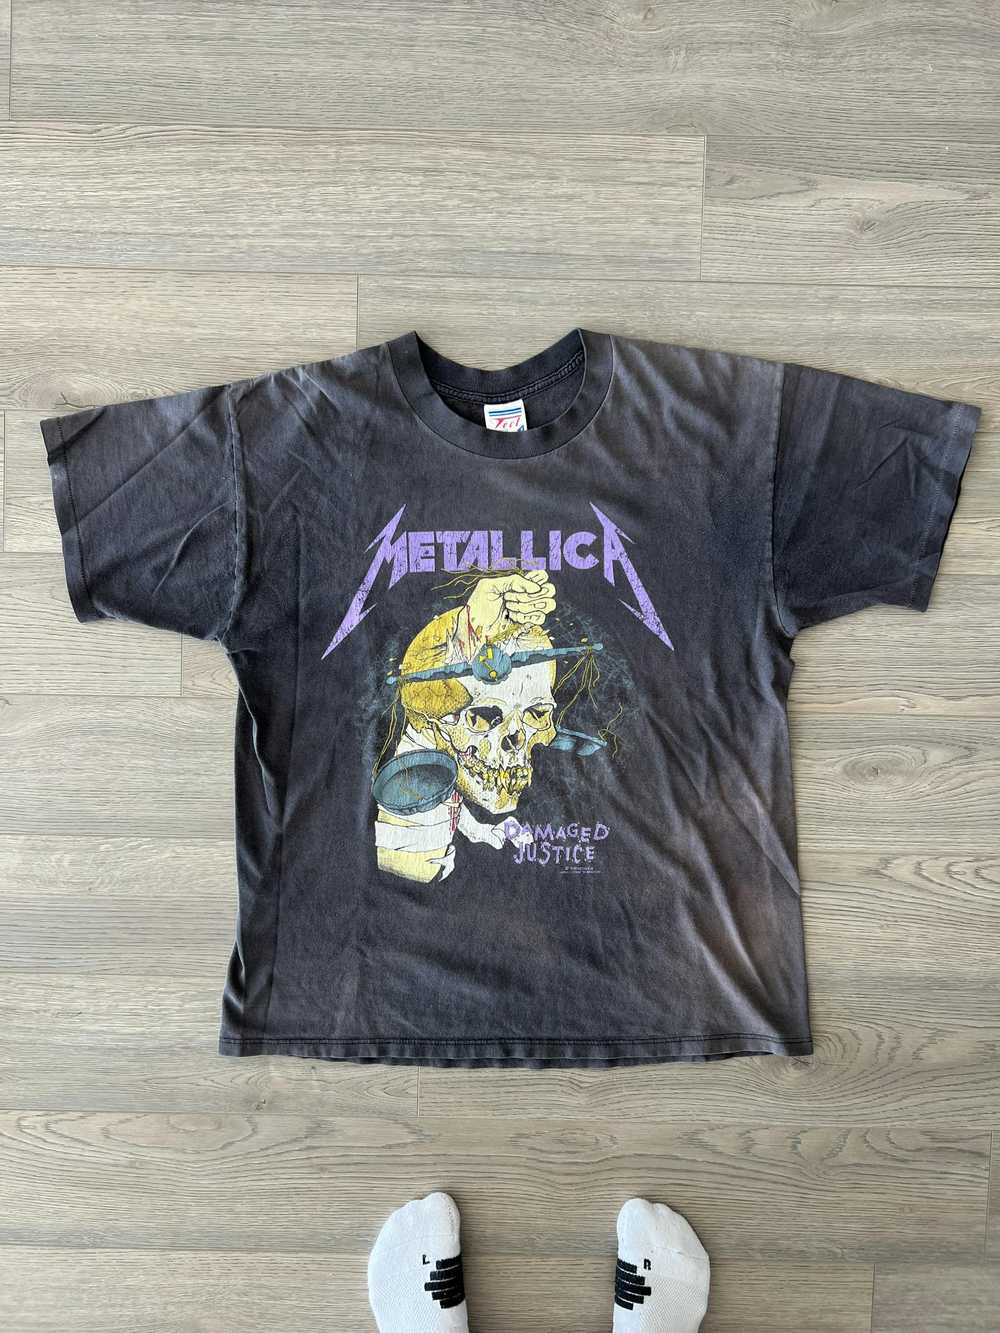 Vintage Vintage metallica damaged justice shirt - image 1